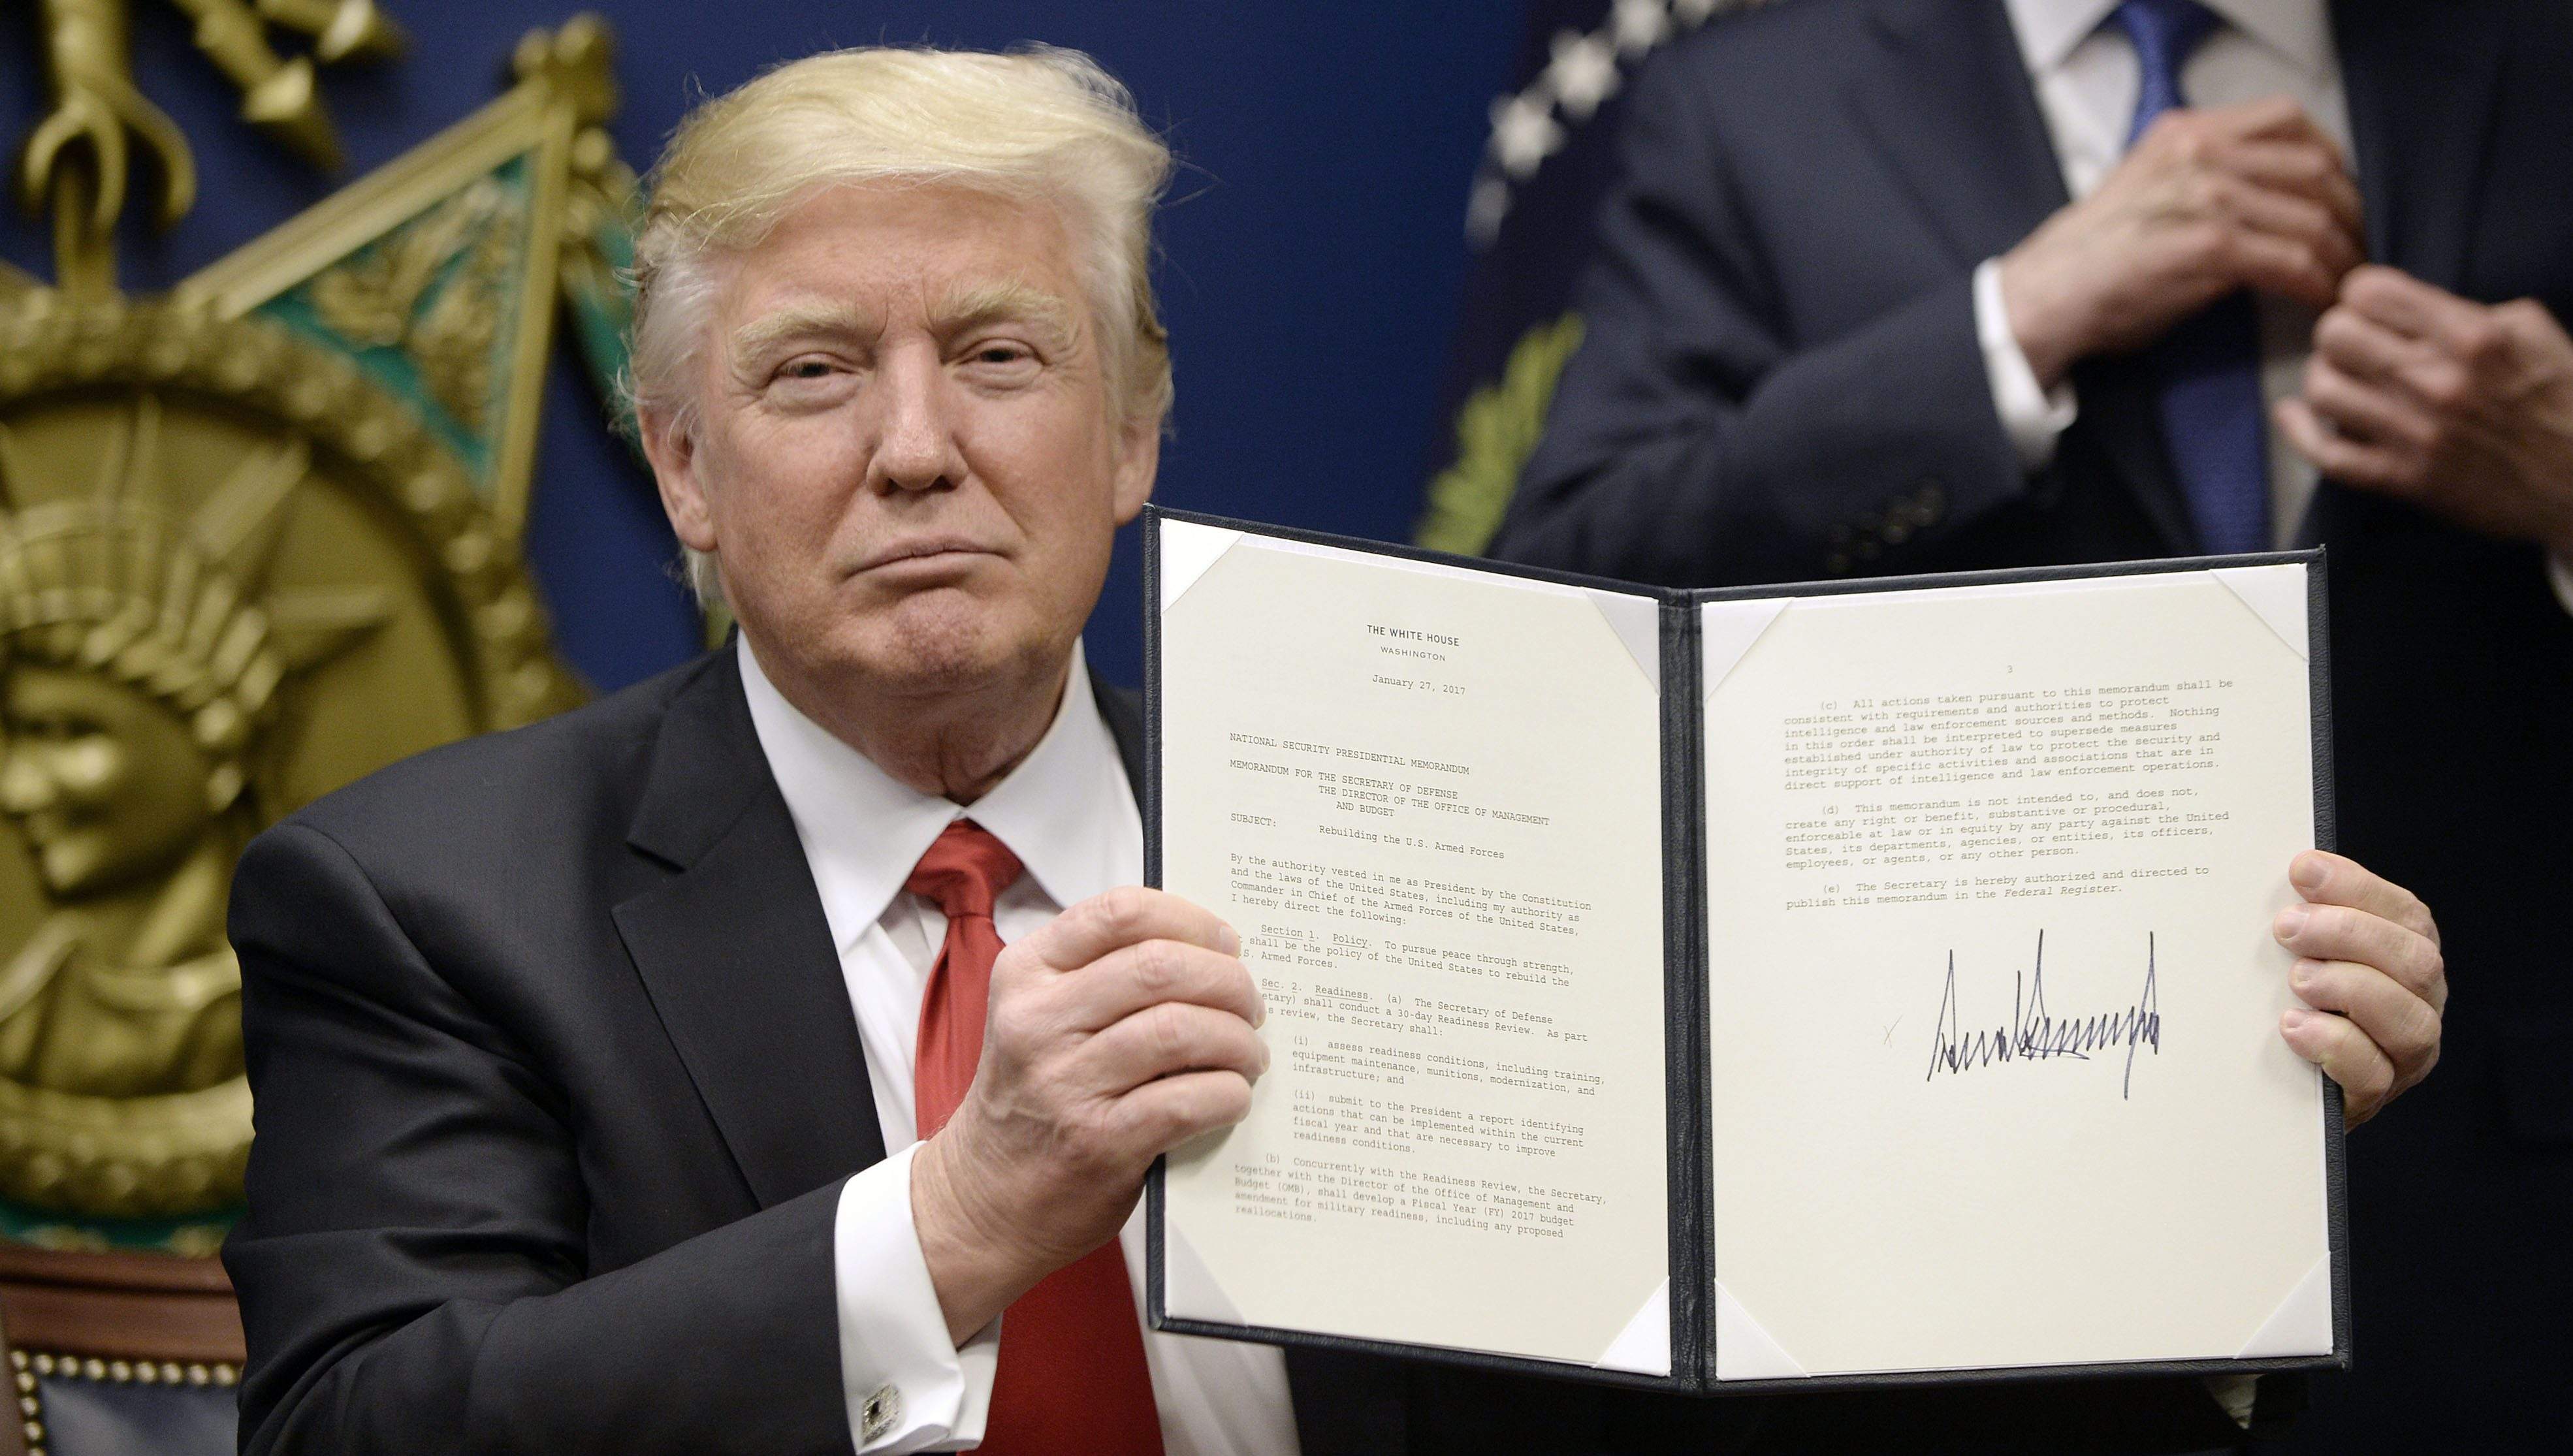 Ngày 27/01, Tổng thống Mỹ Donald Trump đã ký sắc lệnh tạm hoãn nhập cư từ 7 nước Hồi giáo. (Ảnh: chụp màn hình)